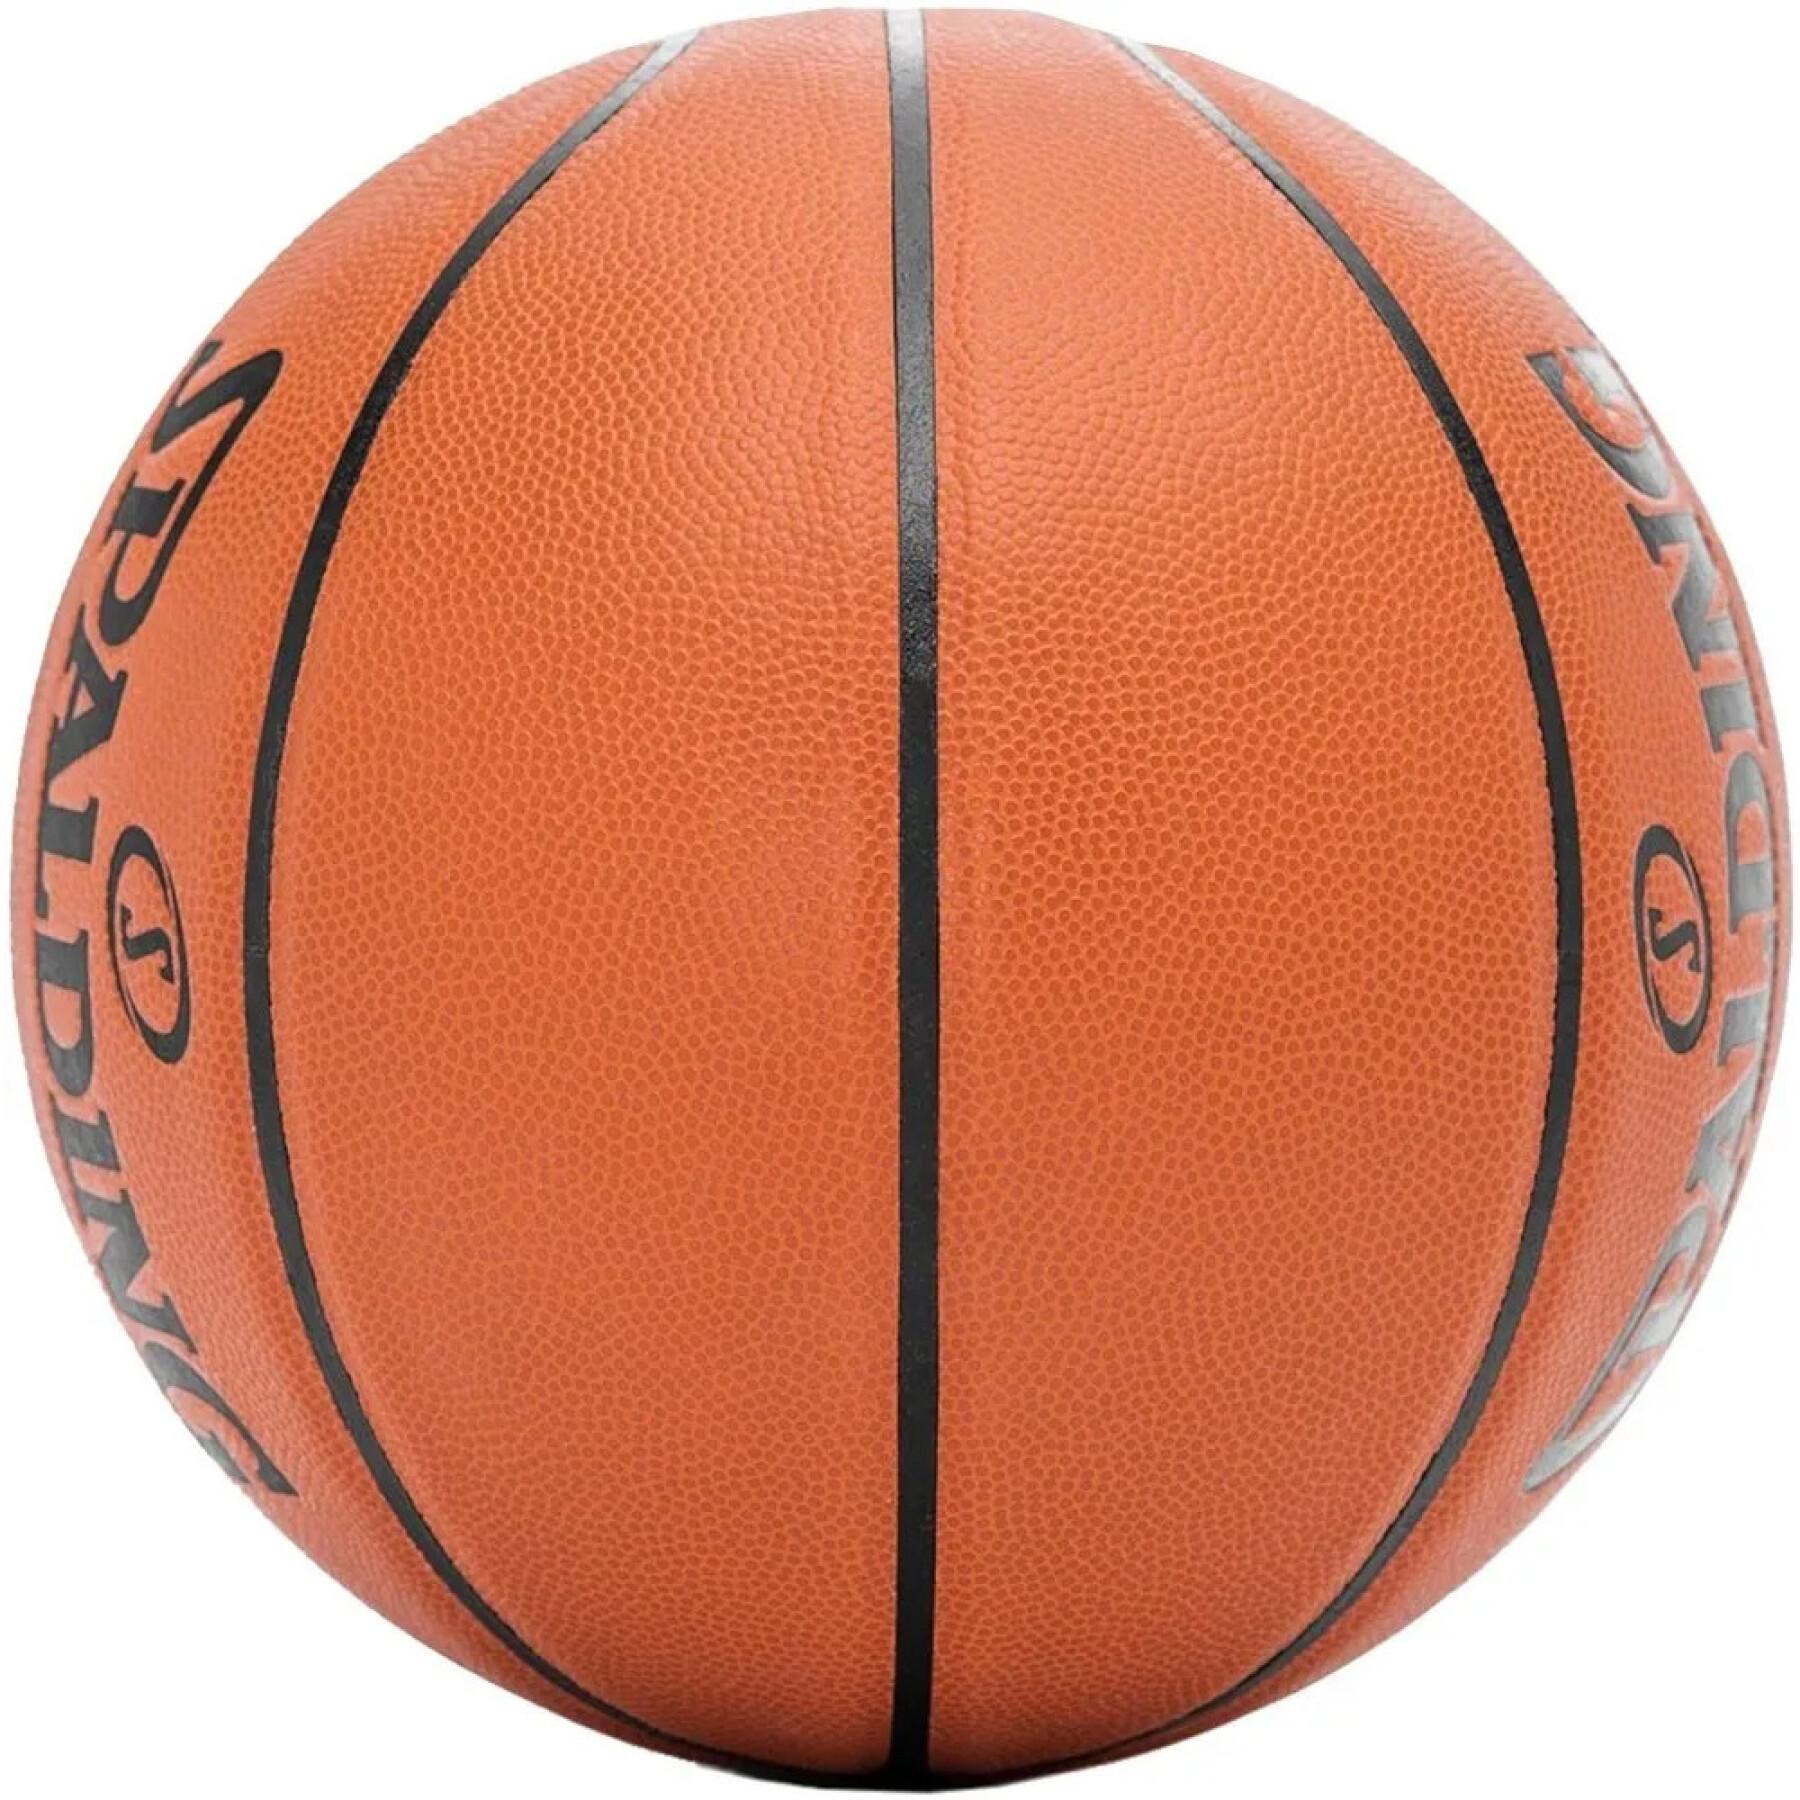 Pallone da basket Spalding React TF-250 Composite